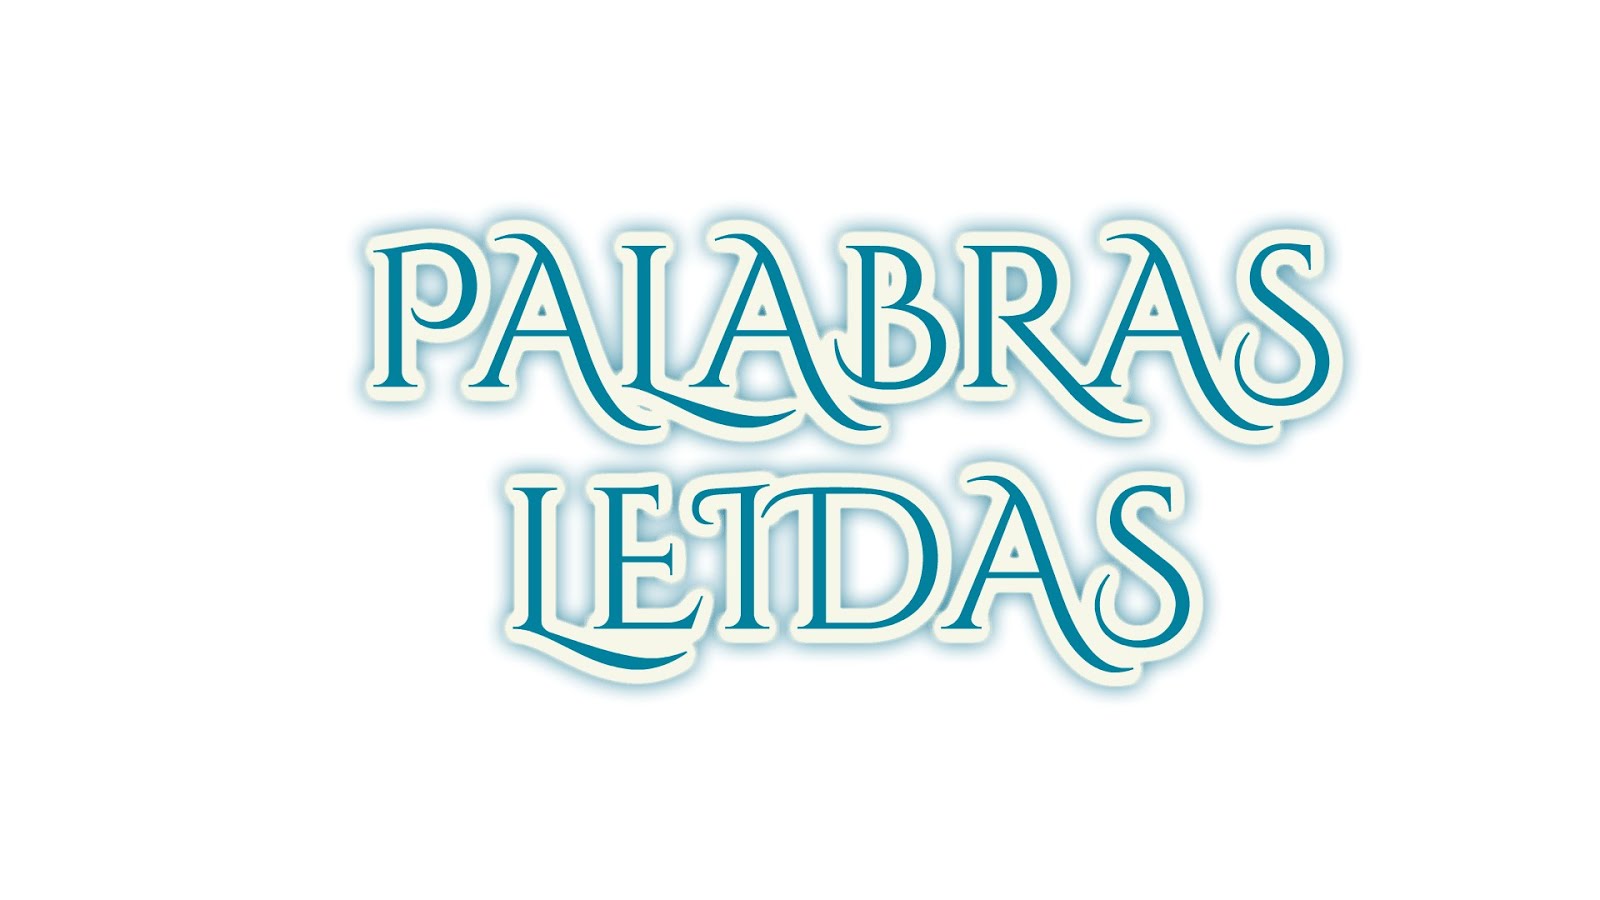 PALABRAS LEIDAS